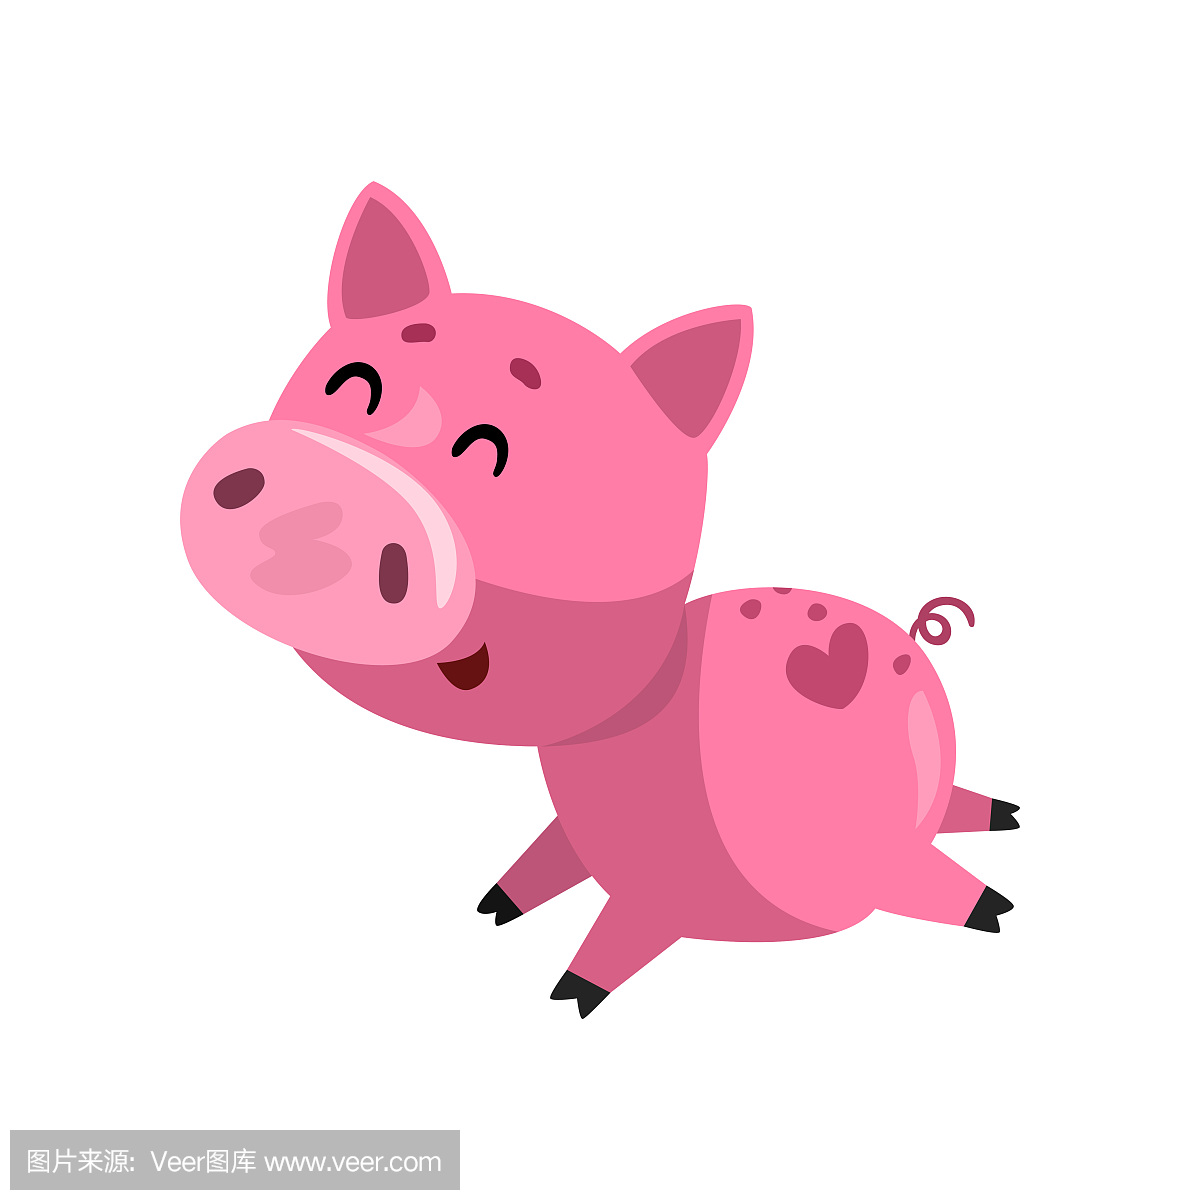 粉红色的滑稽微笑卡通猪运行,可爱的小猪小猪